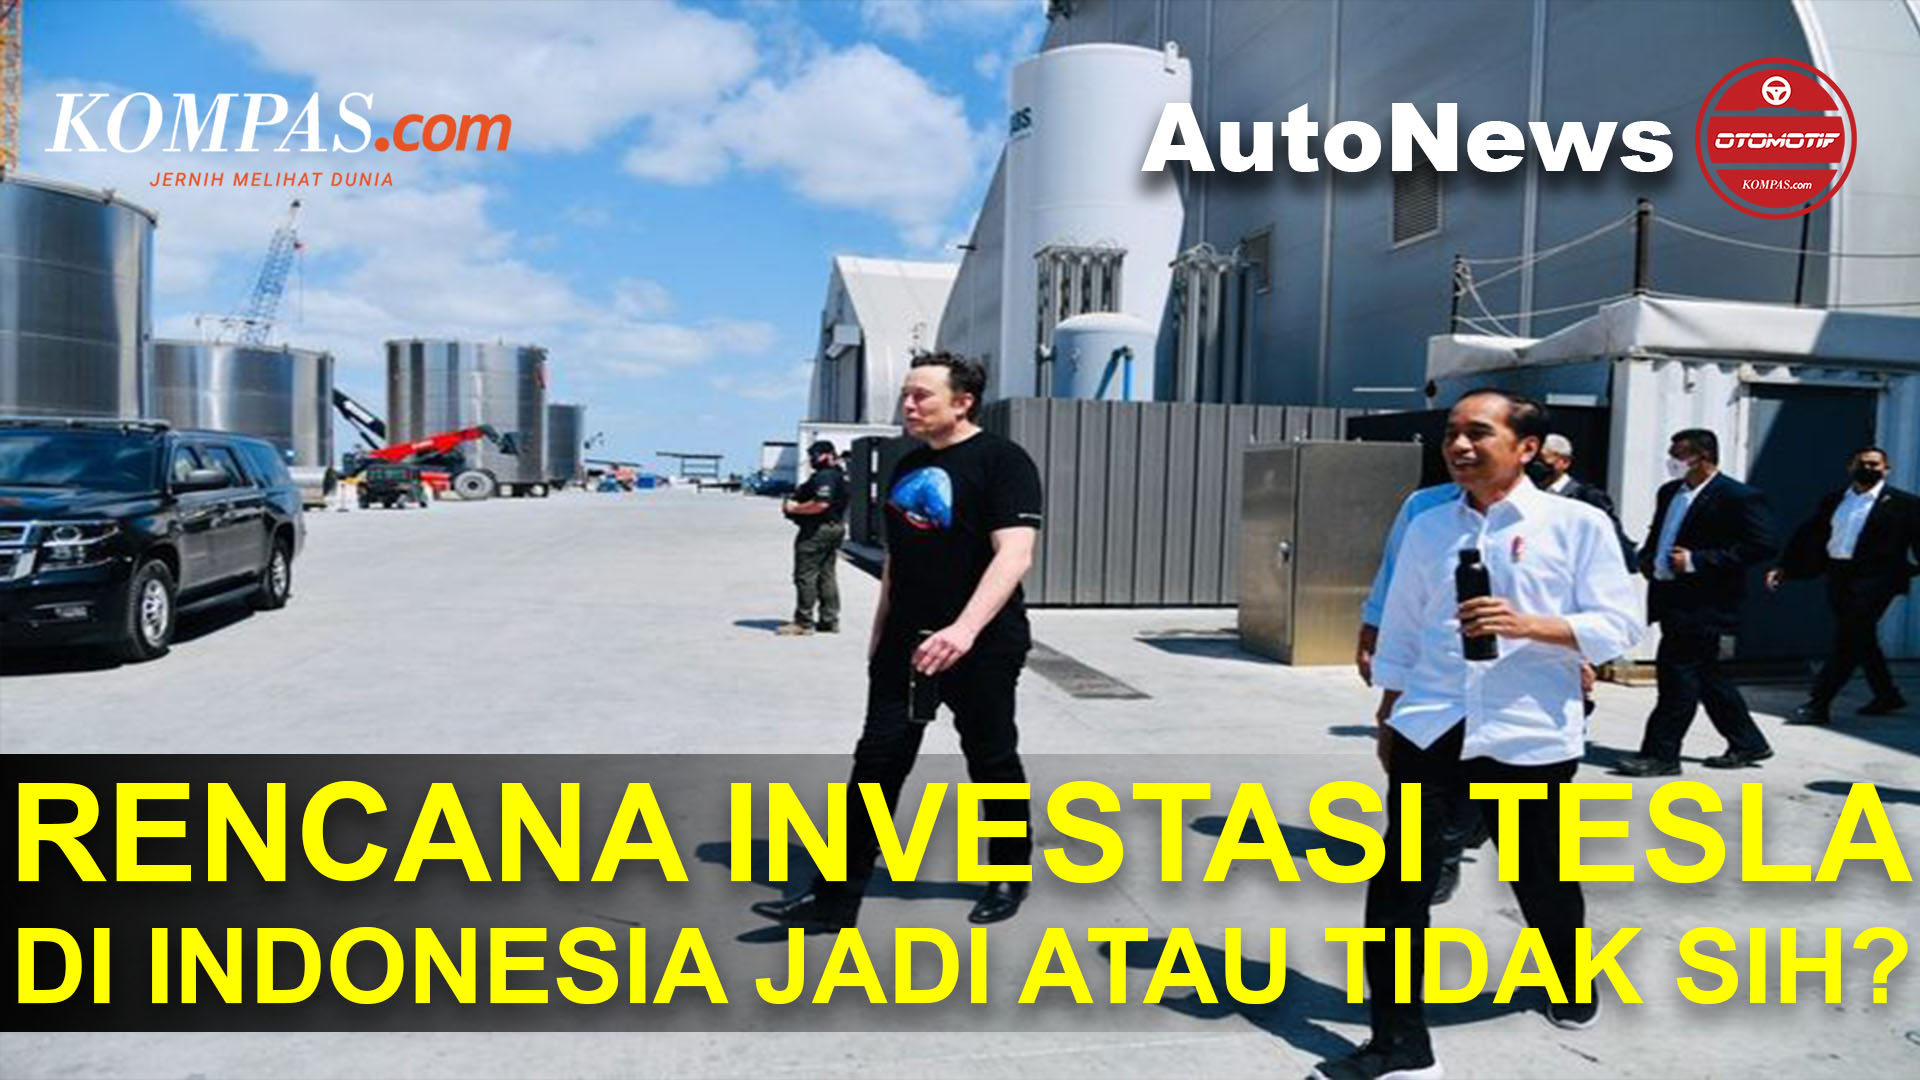 Update Rencana Investasi Tesla di Indonesia, Jadi atau Tidak?